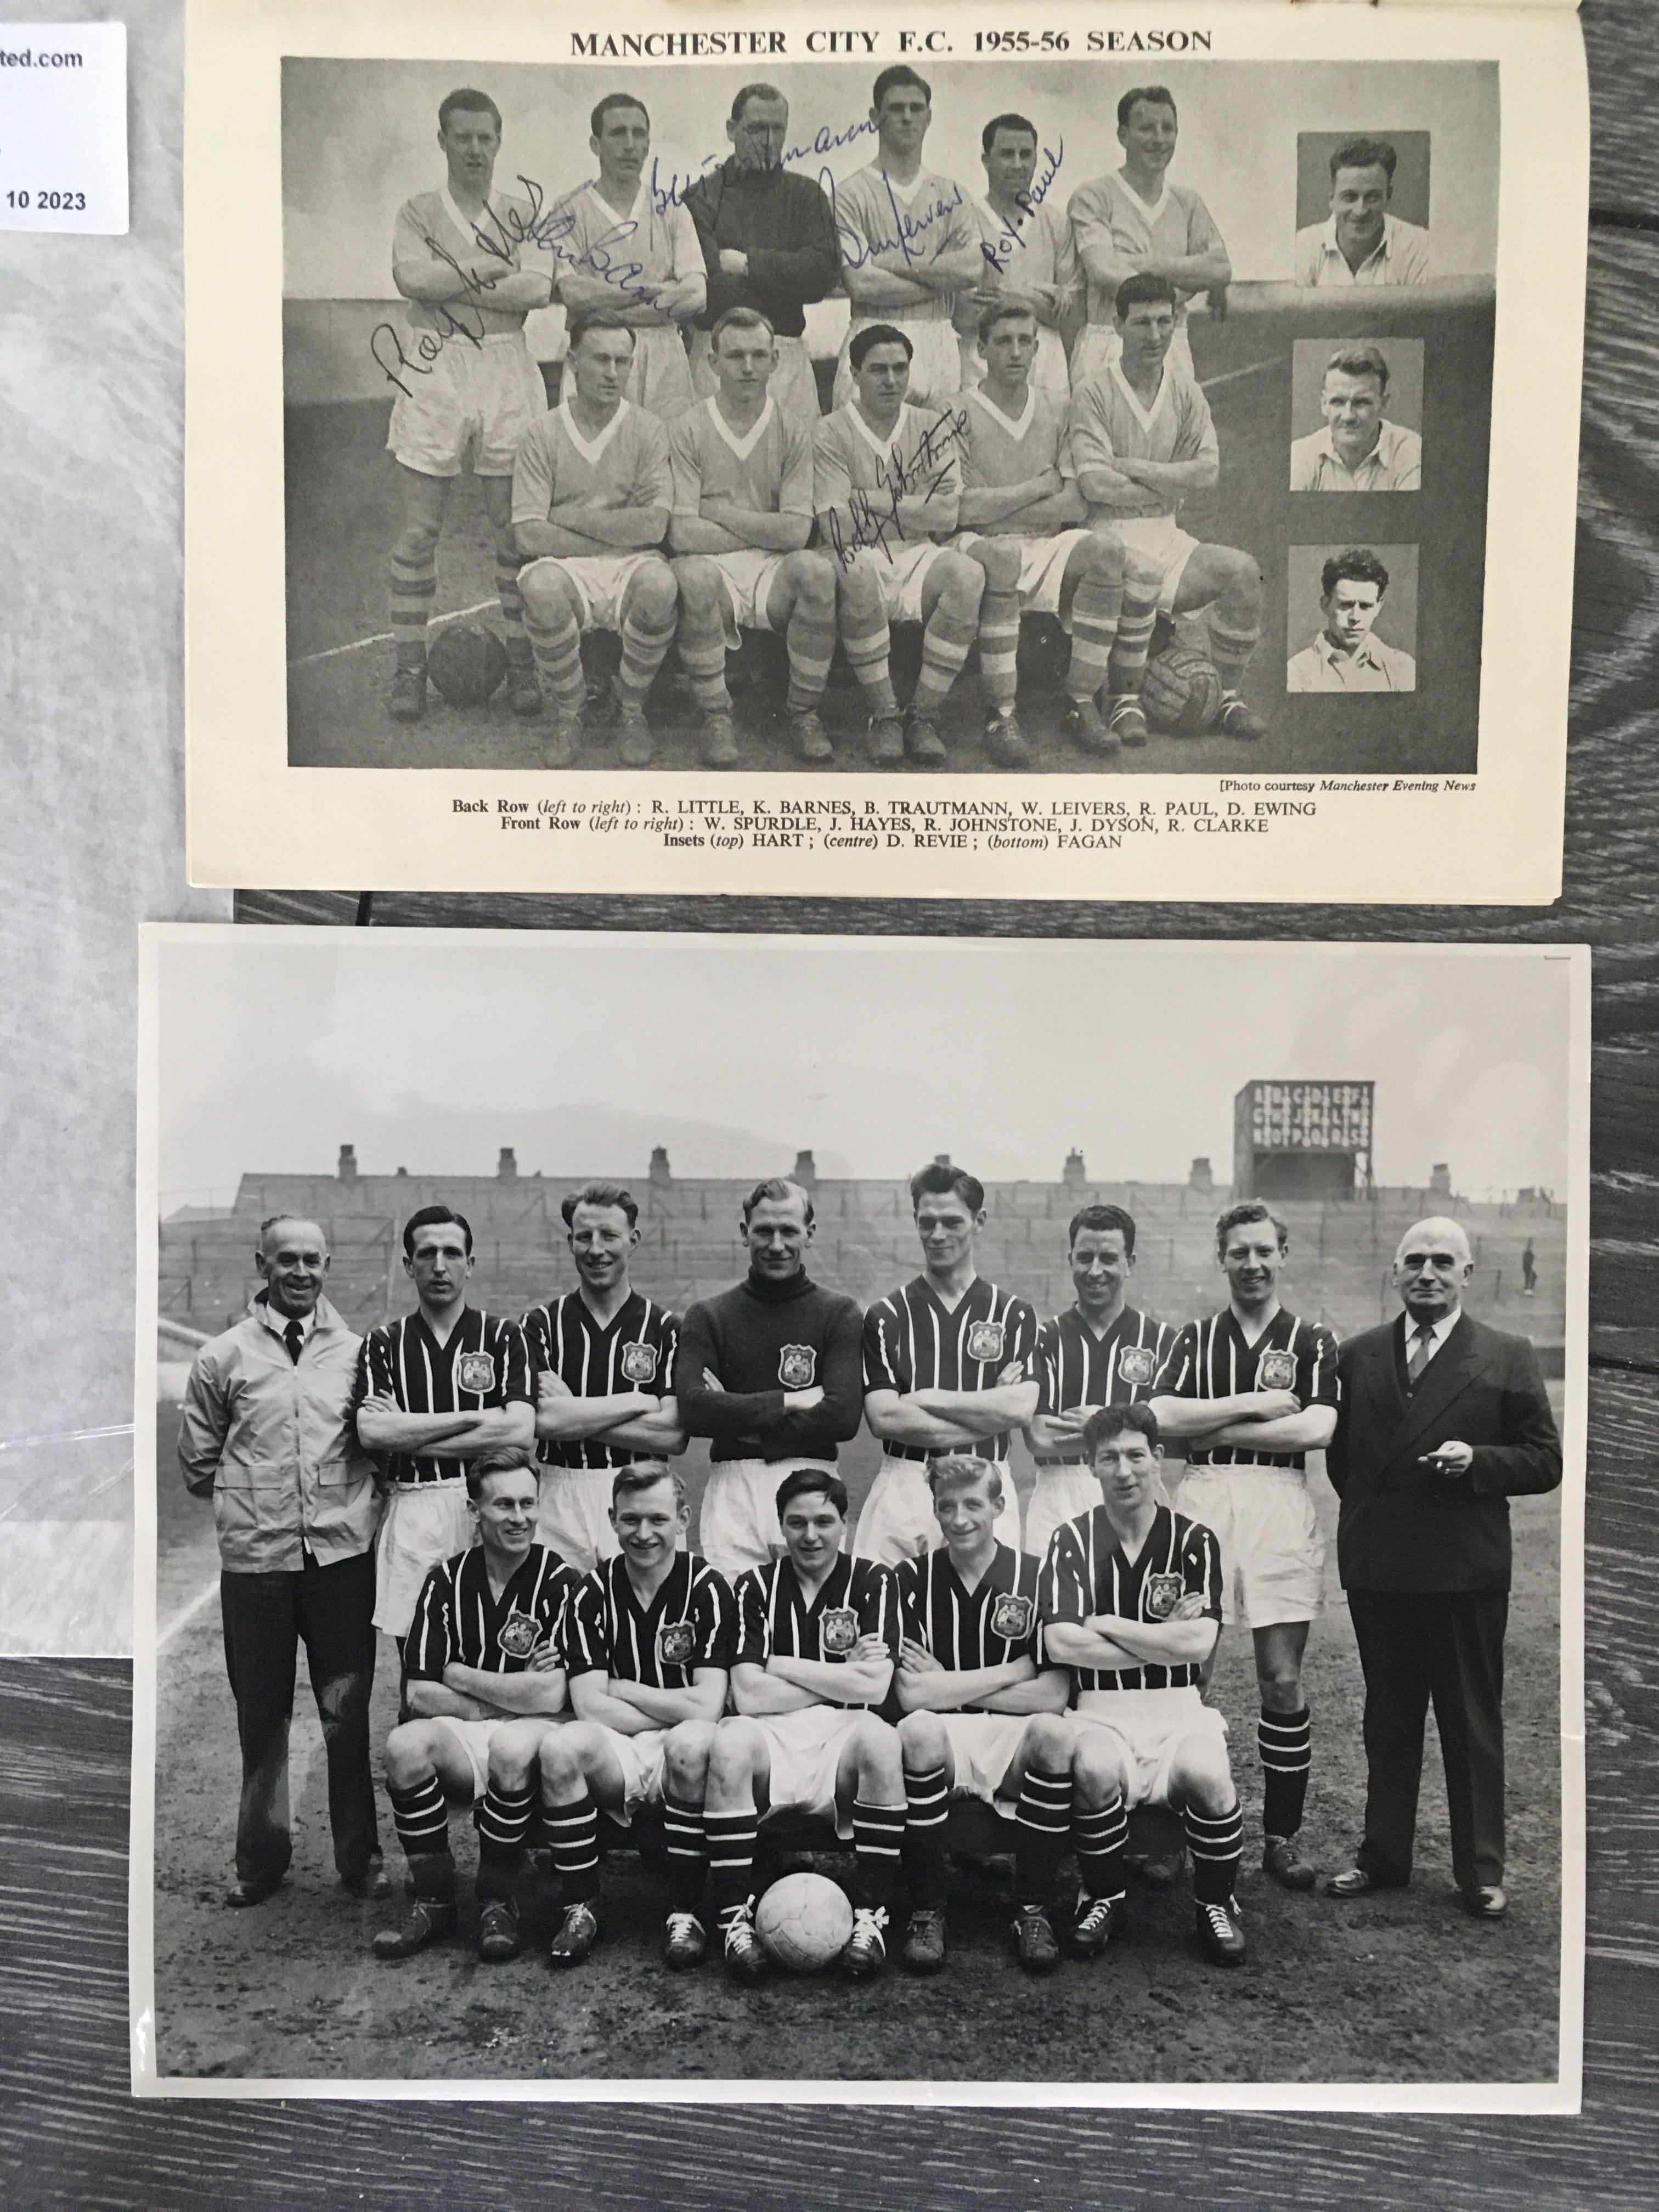 1956 FA Cup Final Multi Signed Football Memorabili - Image 3 of 4